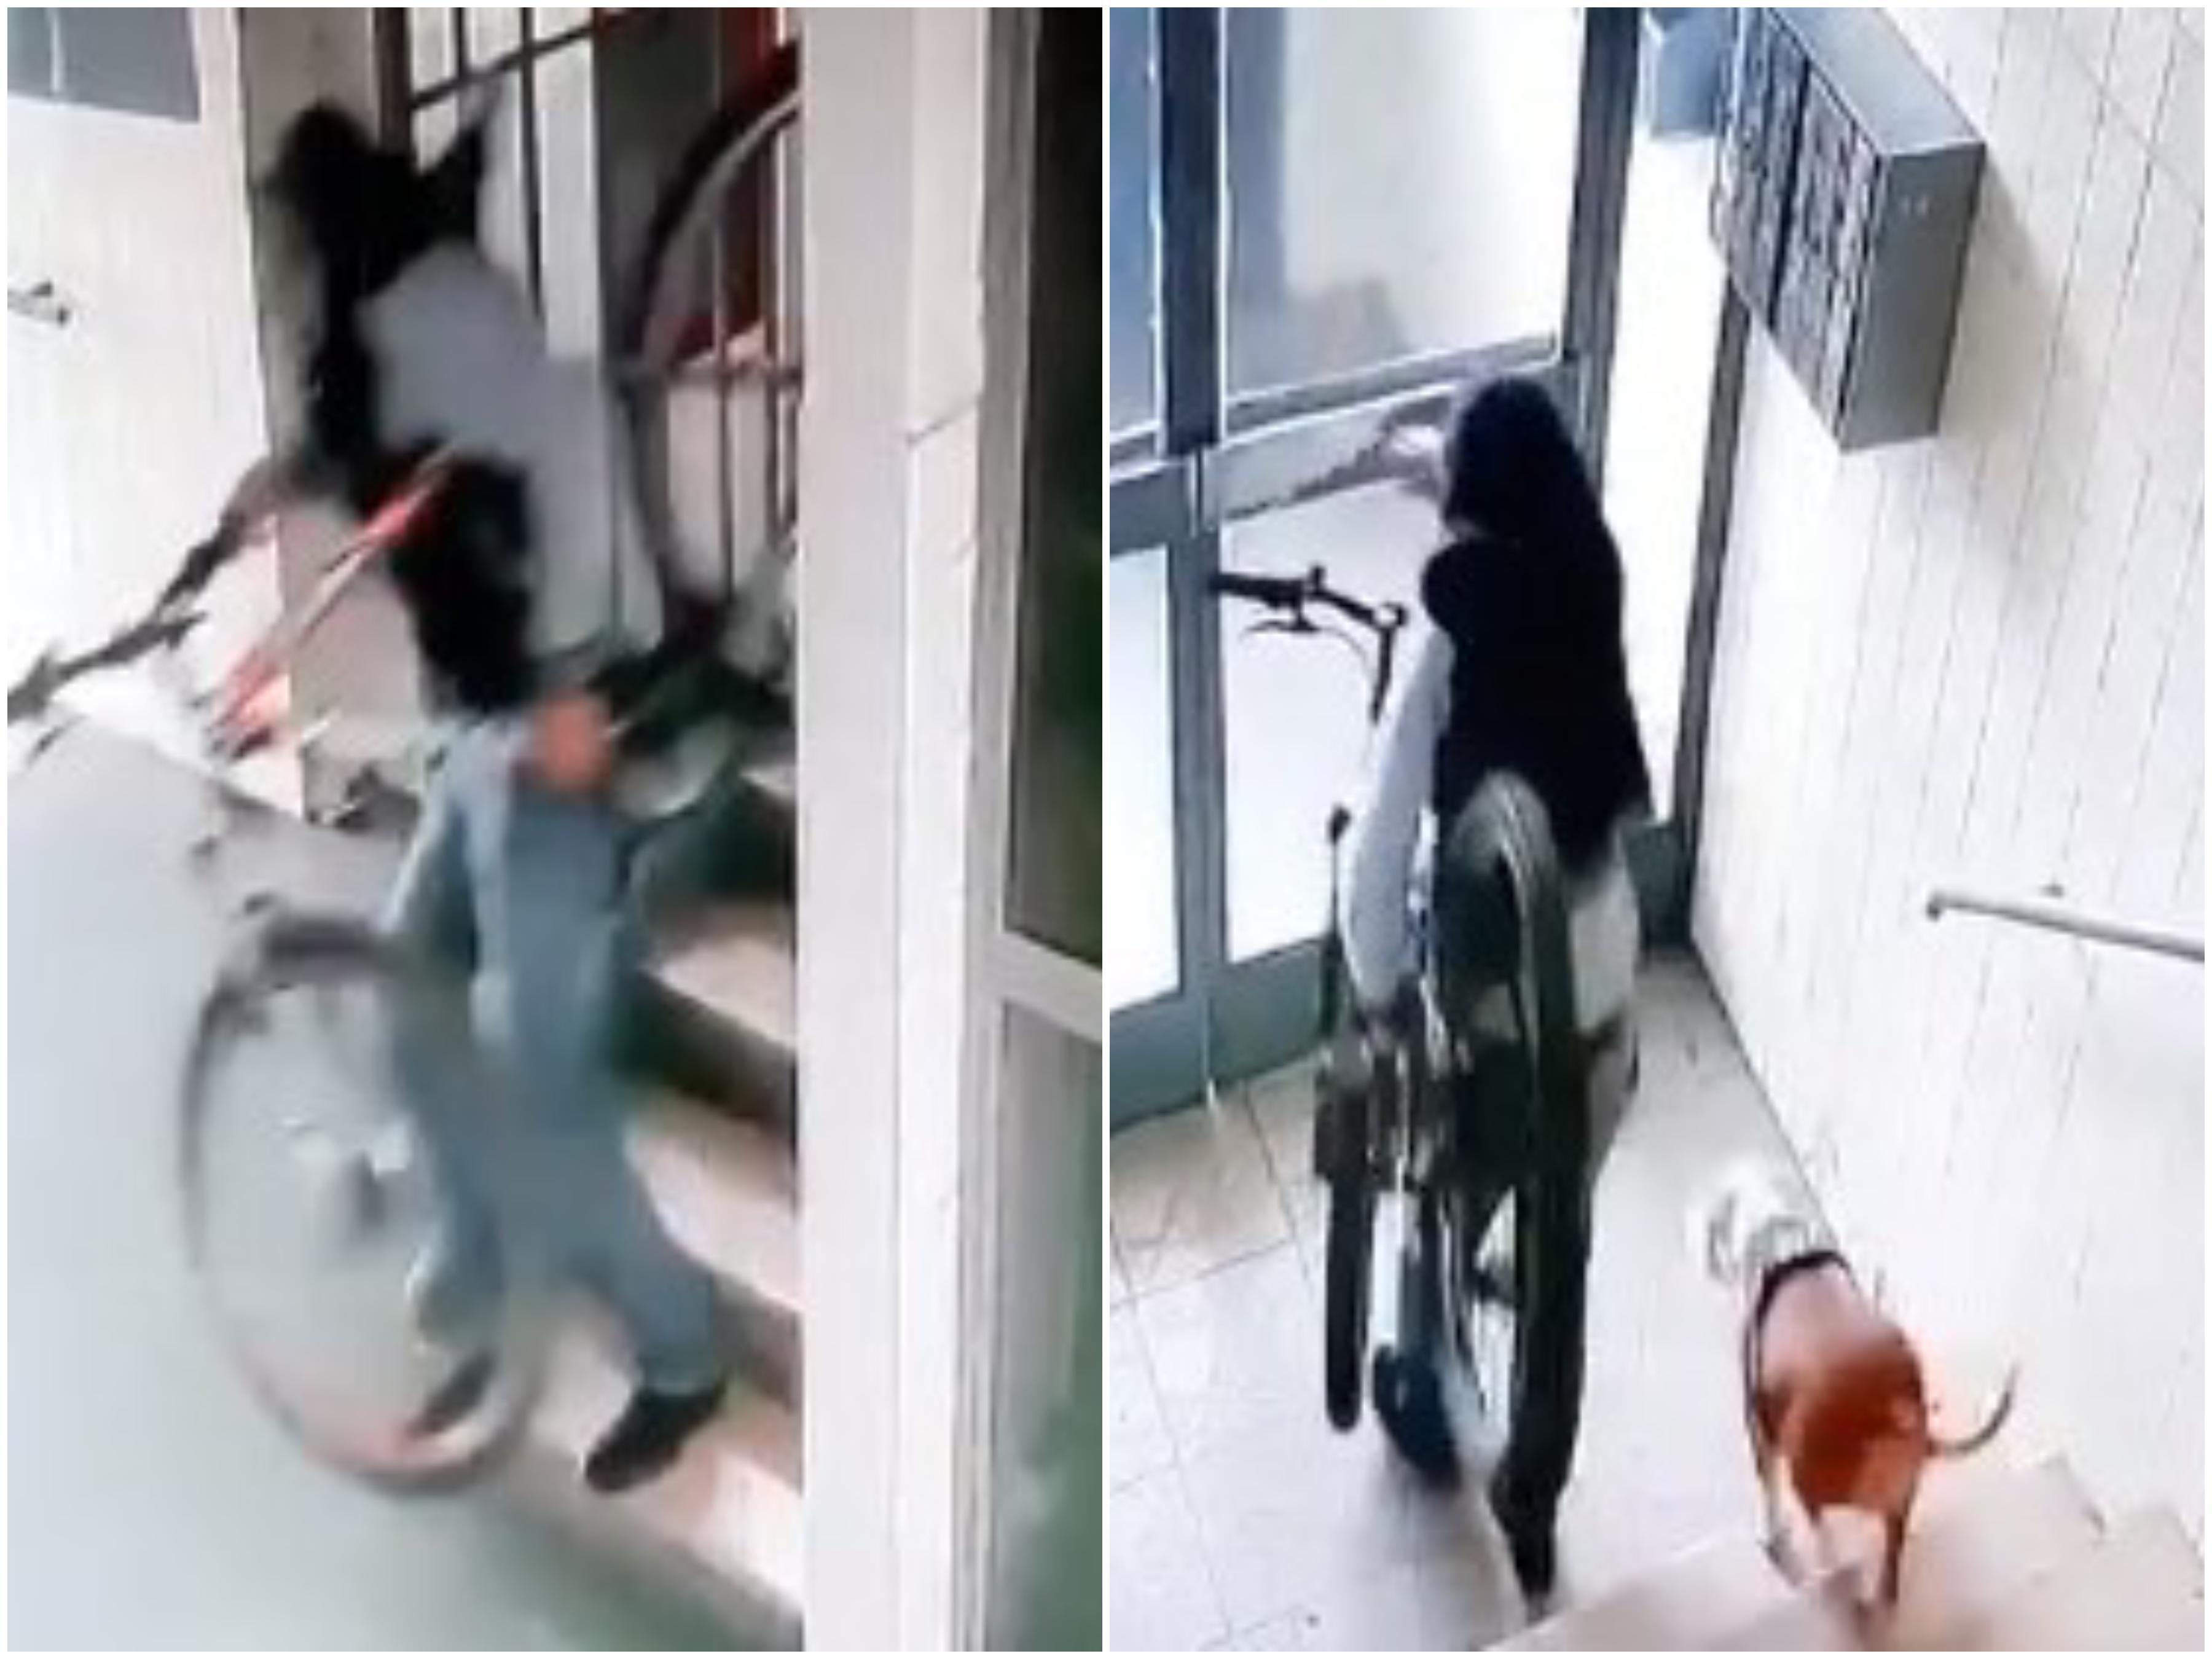 Alipašino Polje: Poveo psa u krađu bicikla, kad je izlazio iz haustora, pokrio glavu duksericom